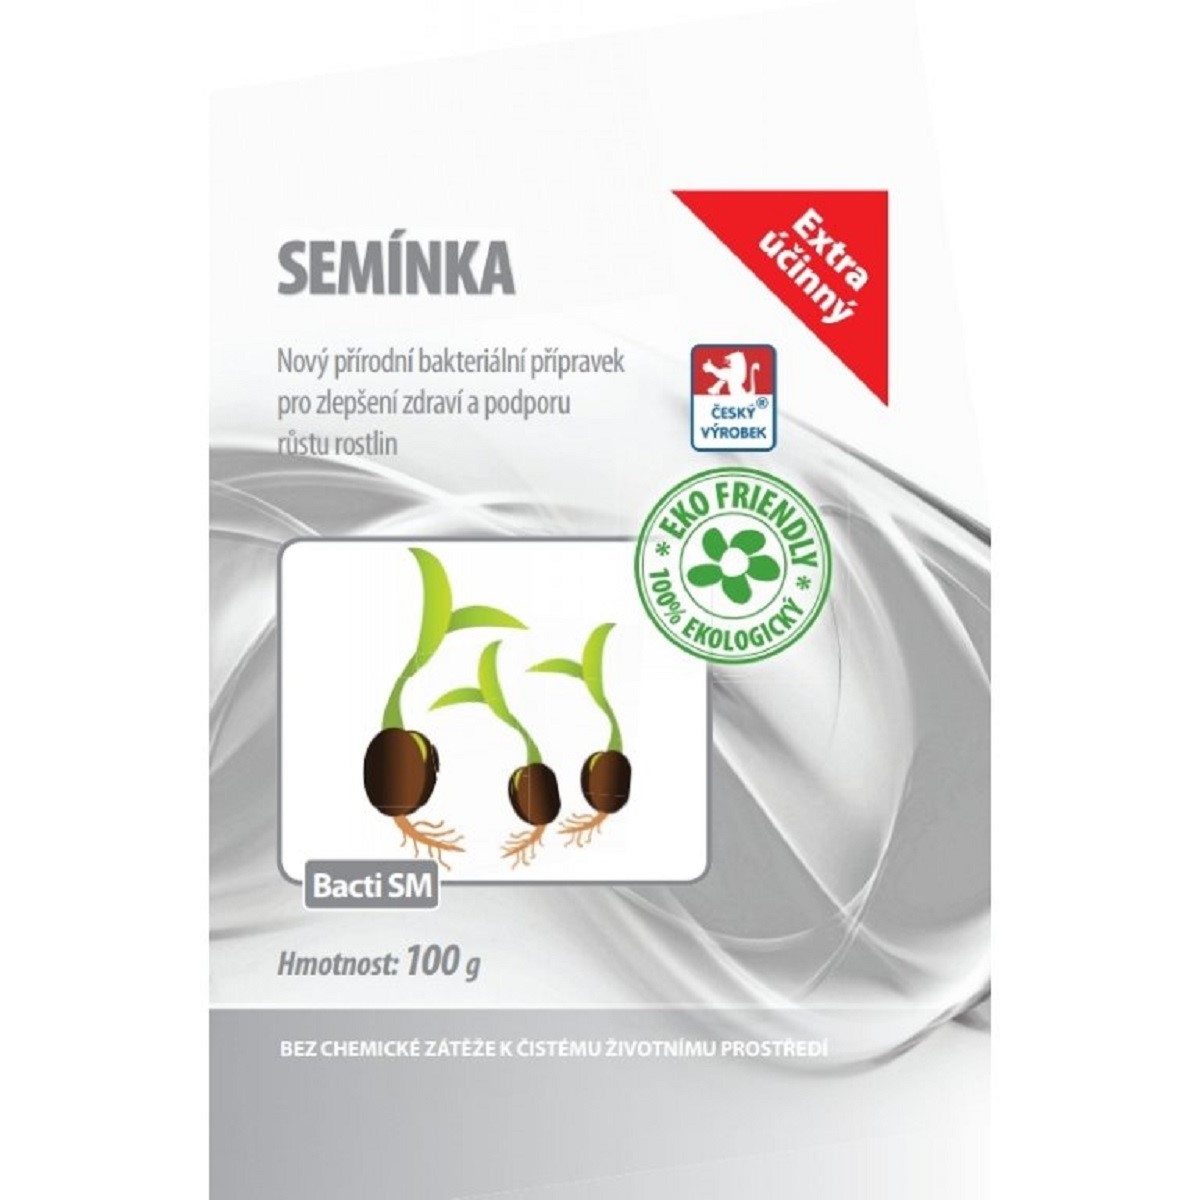 Bacti SM - Stimulátor zdraví rostlin pro semínka - 100 g